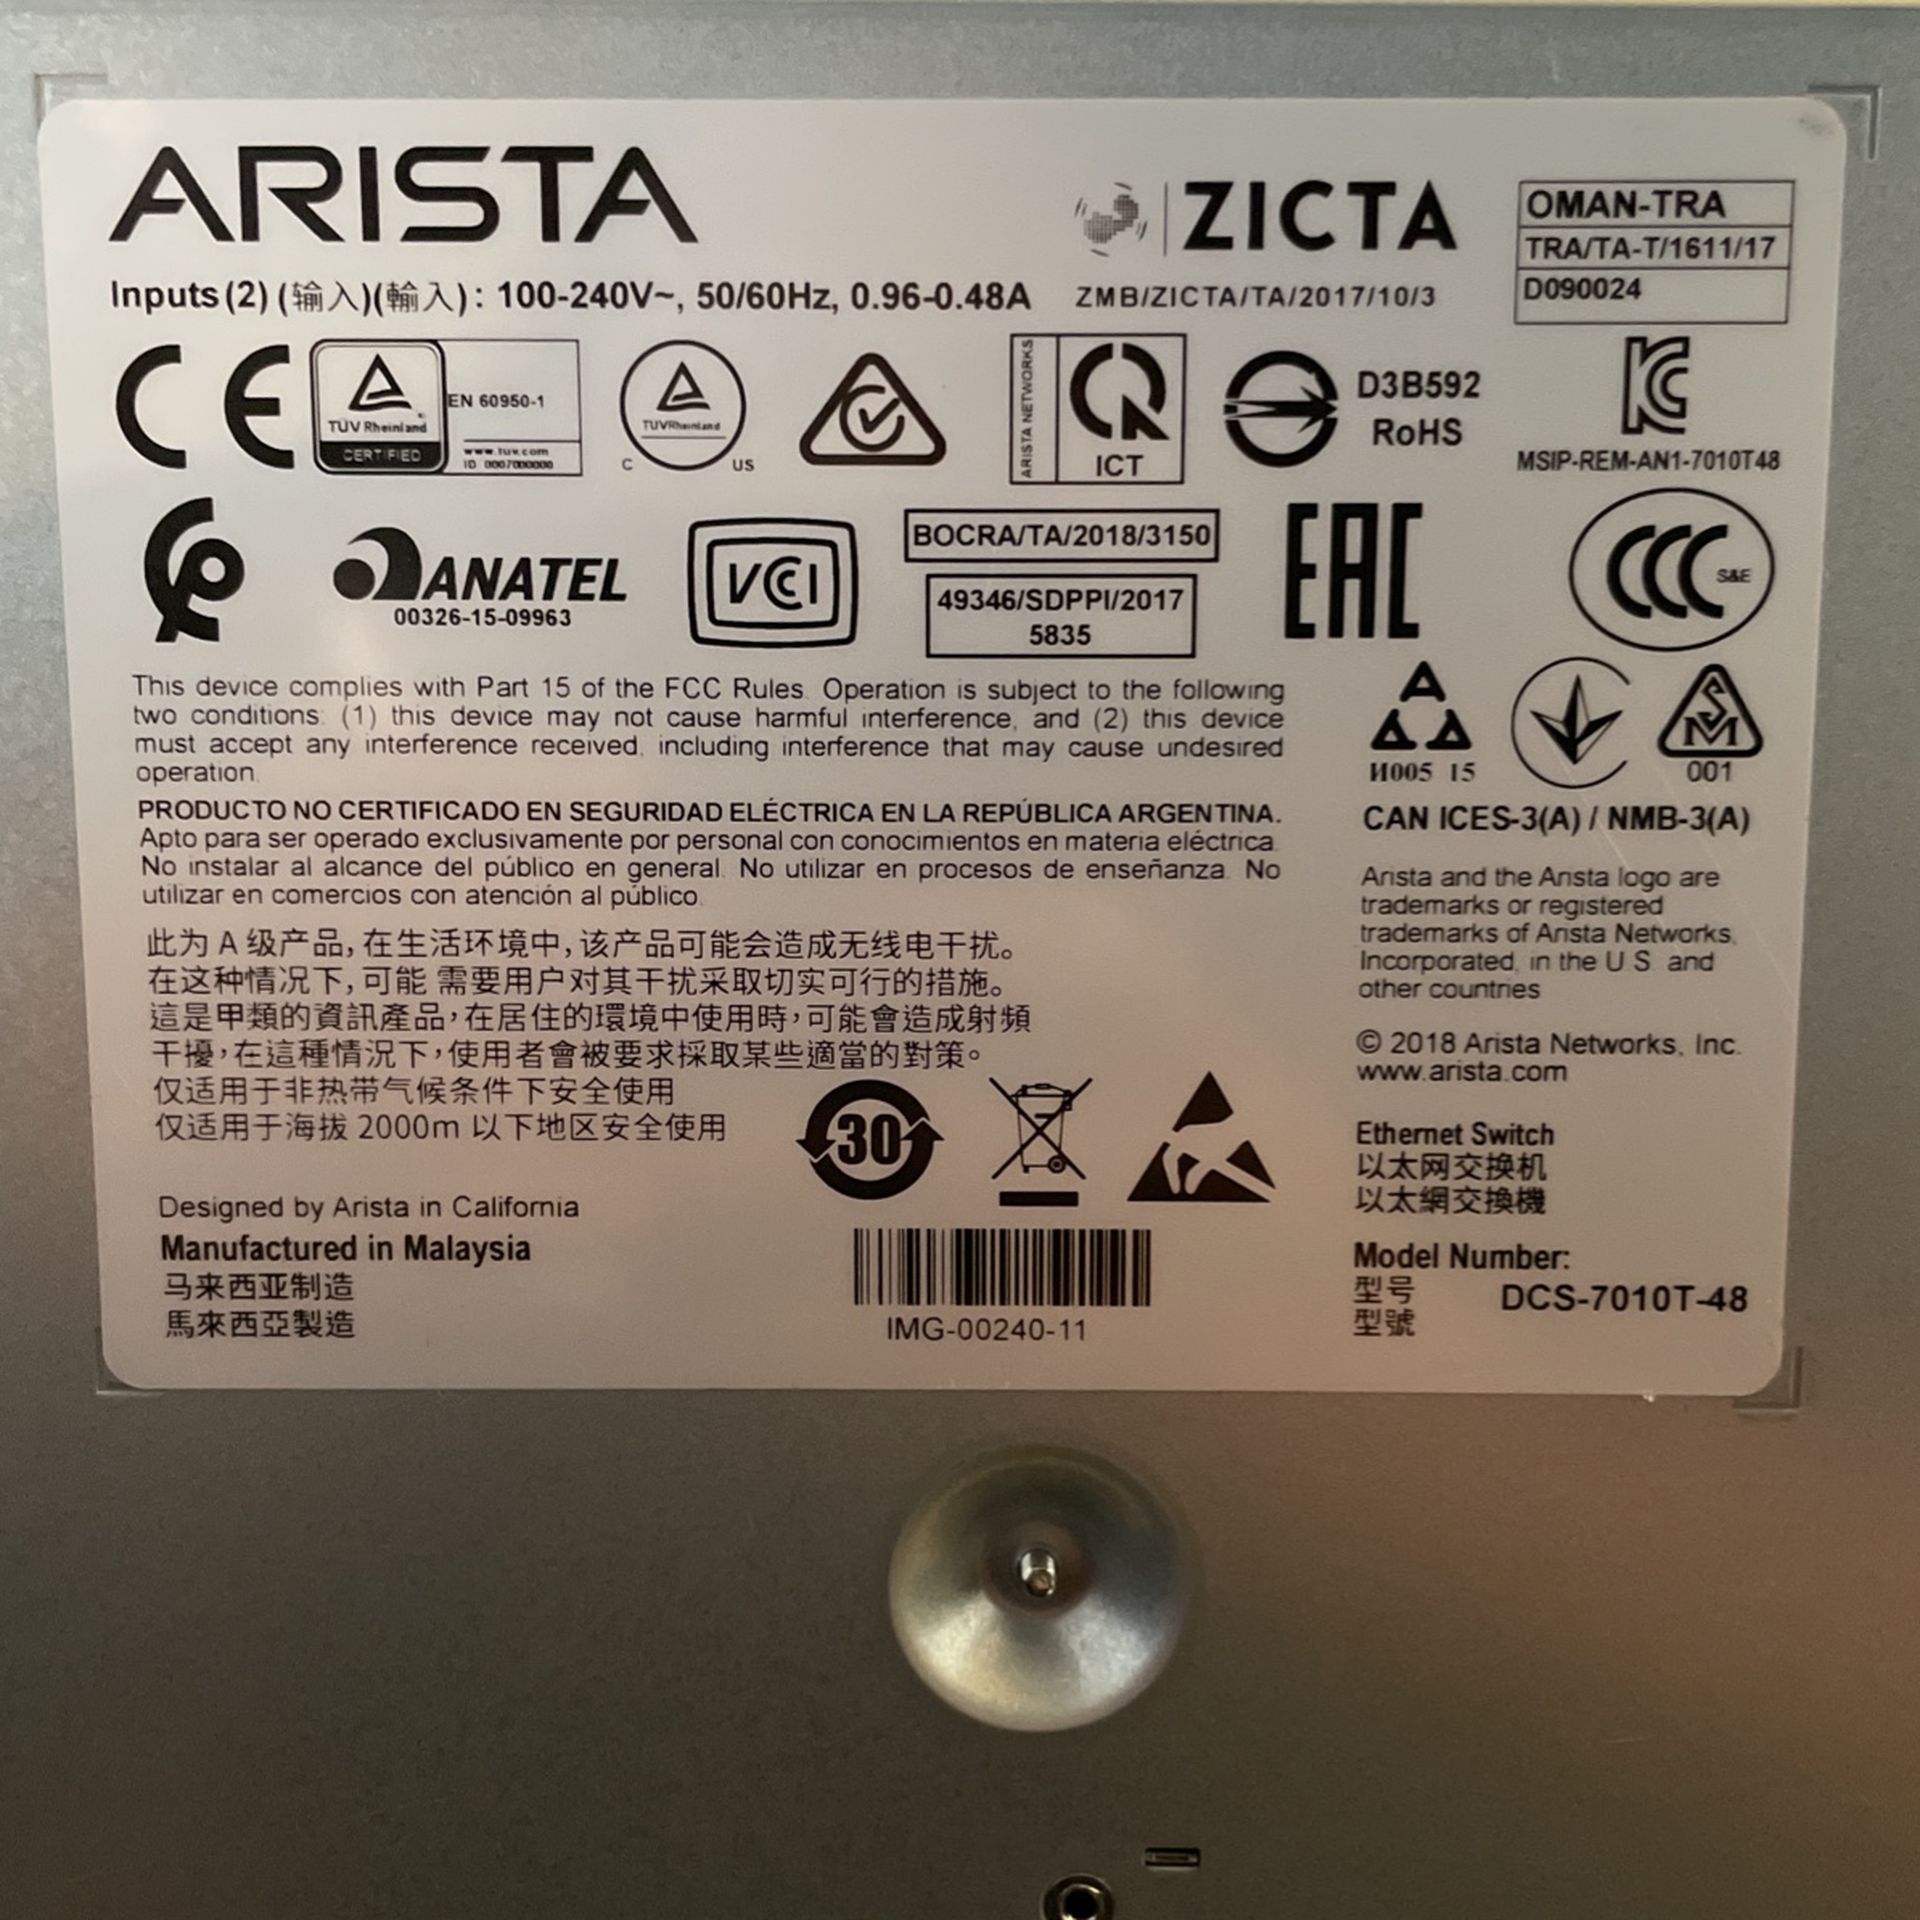 Arista 7010T-48 gigabit Network Switch